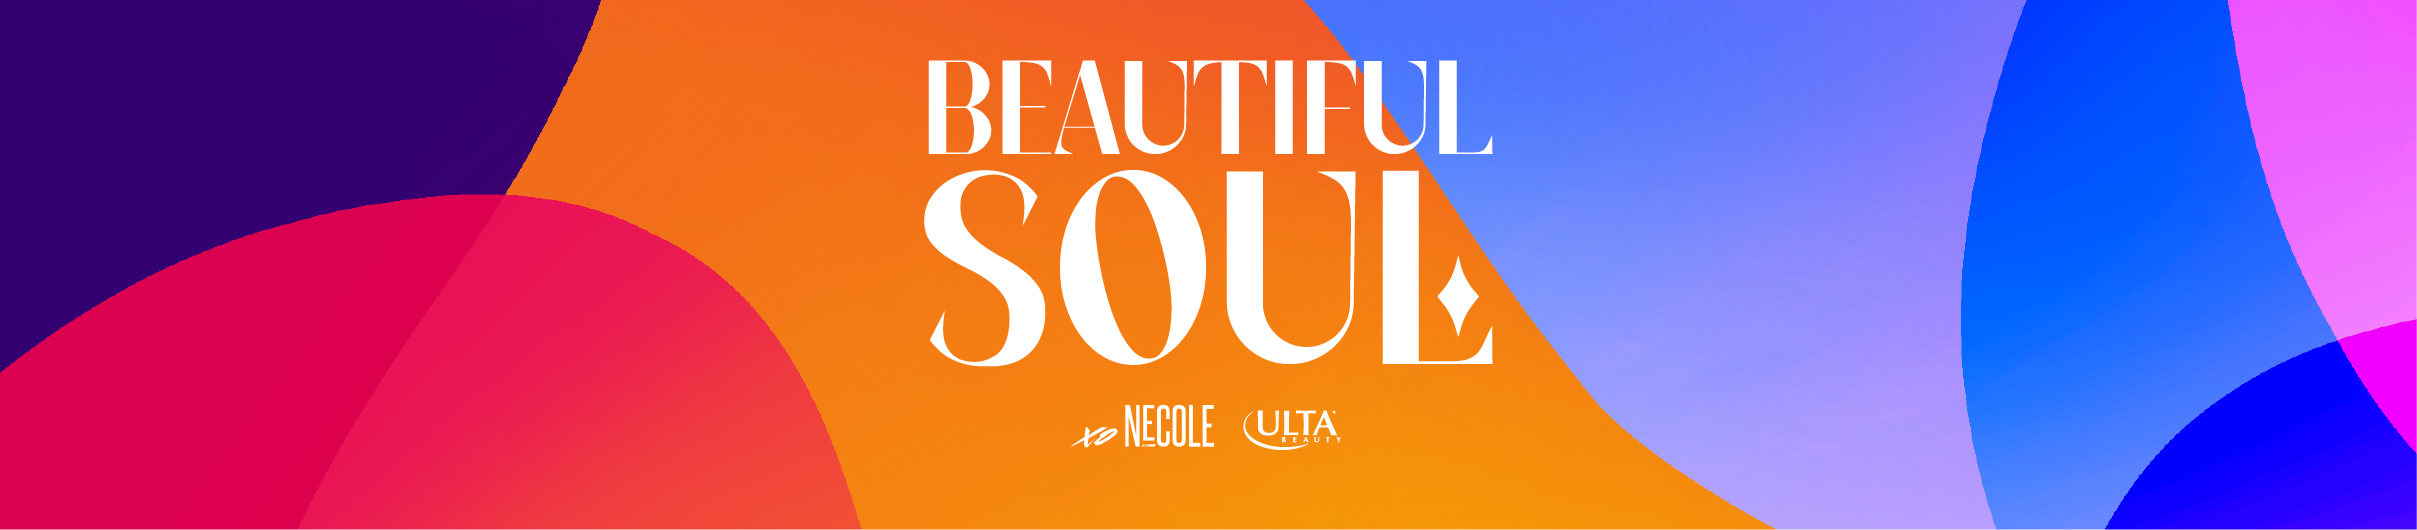 beautiful-soul-banner